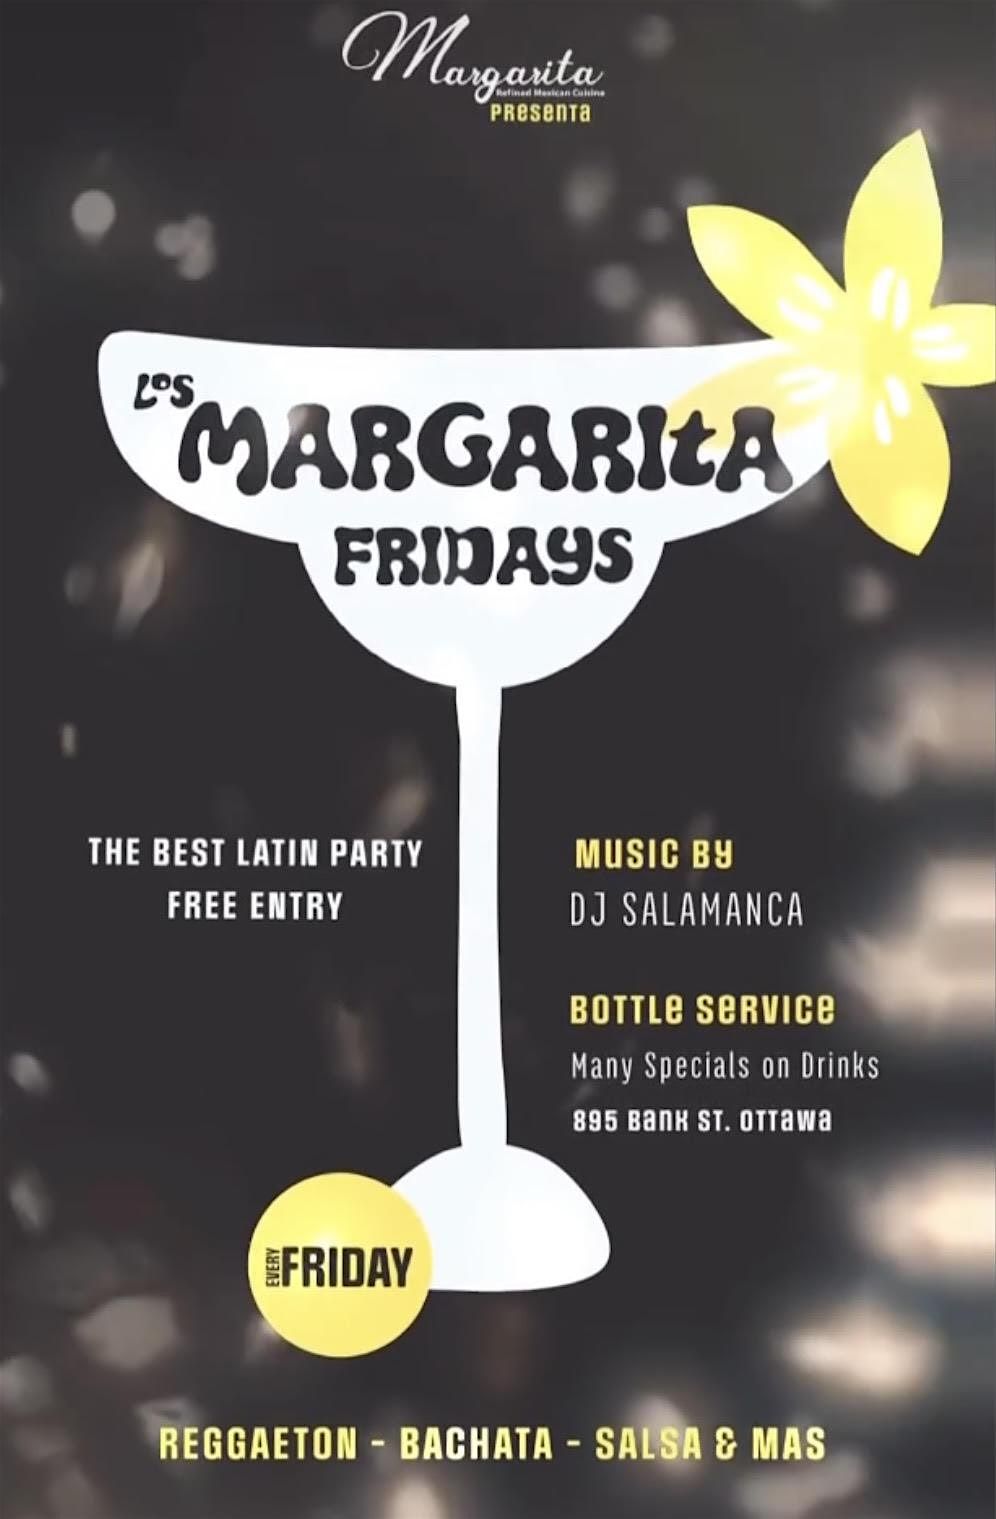 Latin Fridays at Margarita